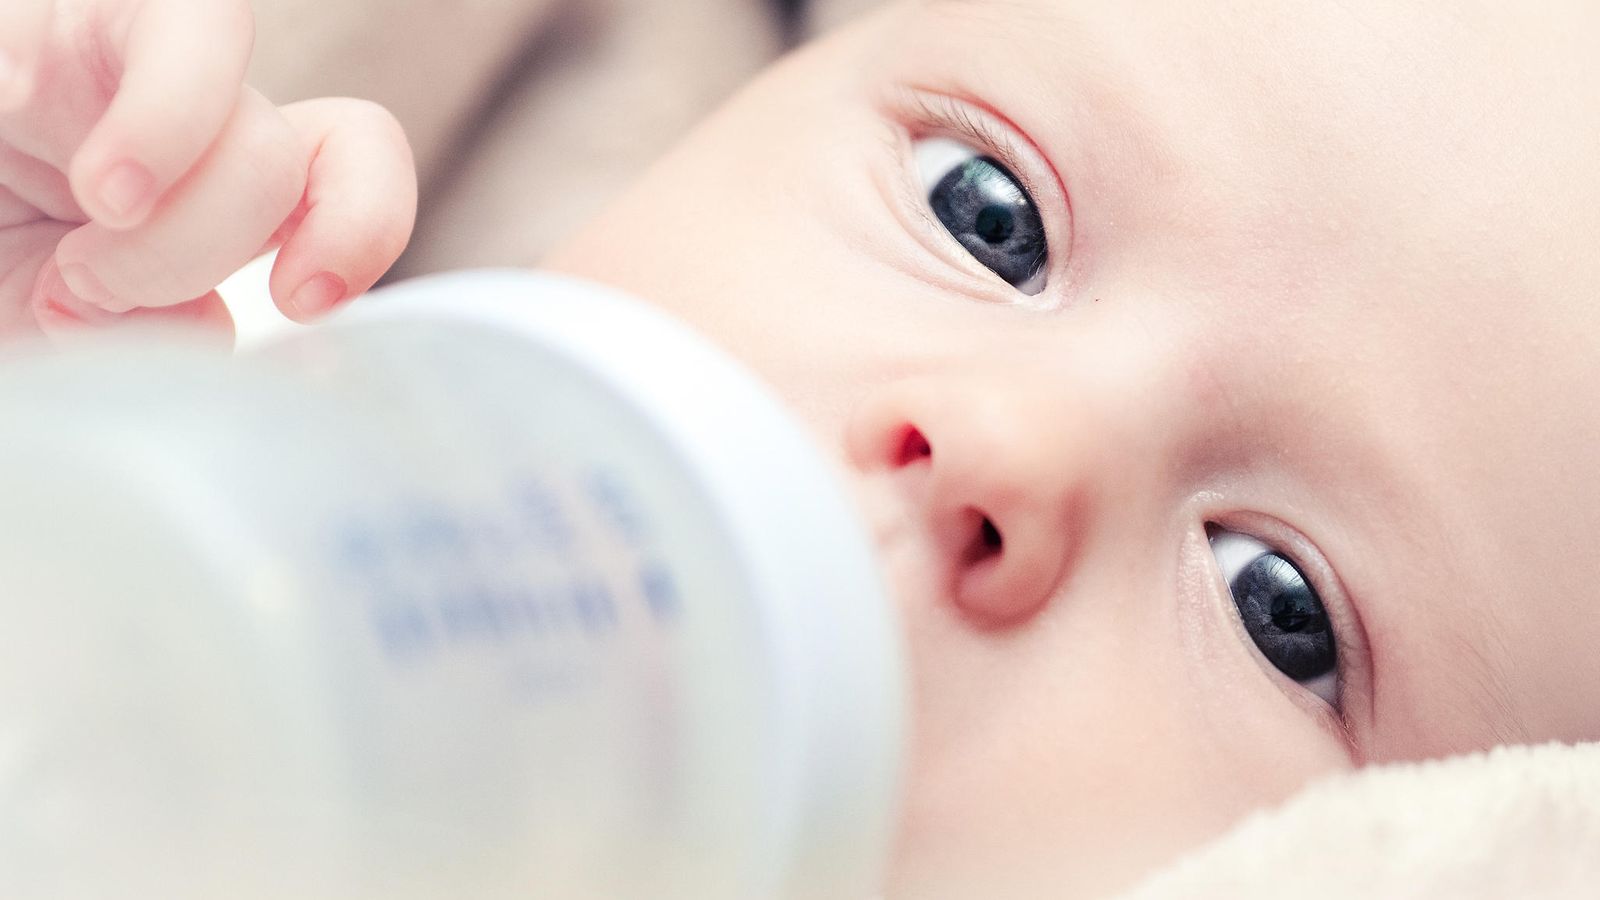 Taapero joi yli neljä pullollista maitoa päivässä – sitten alkoivat oudot  oireet: 